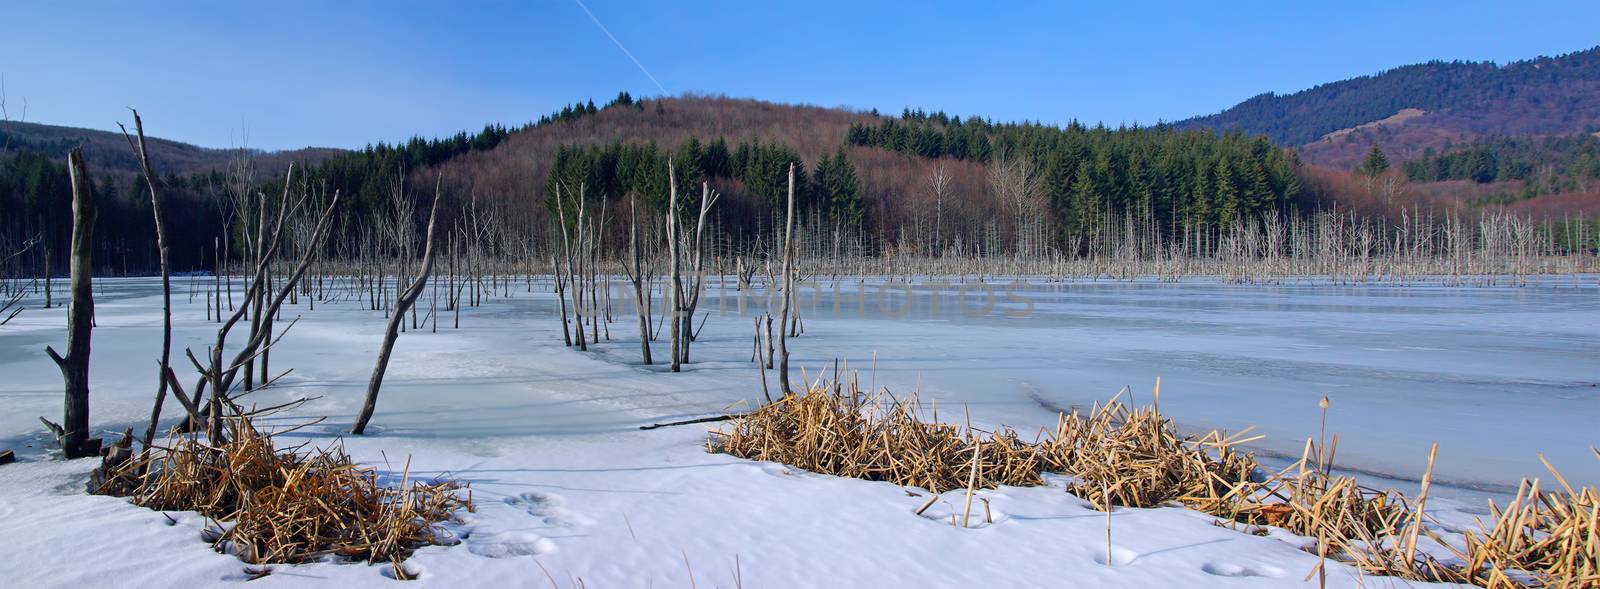 Winter forest lake panorama, dead trunks in frozen water. Cuejdel Lake in Romanian Carpathians